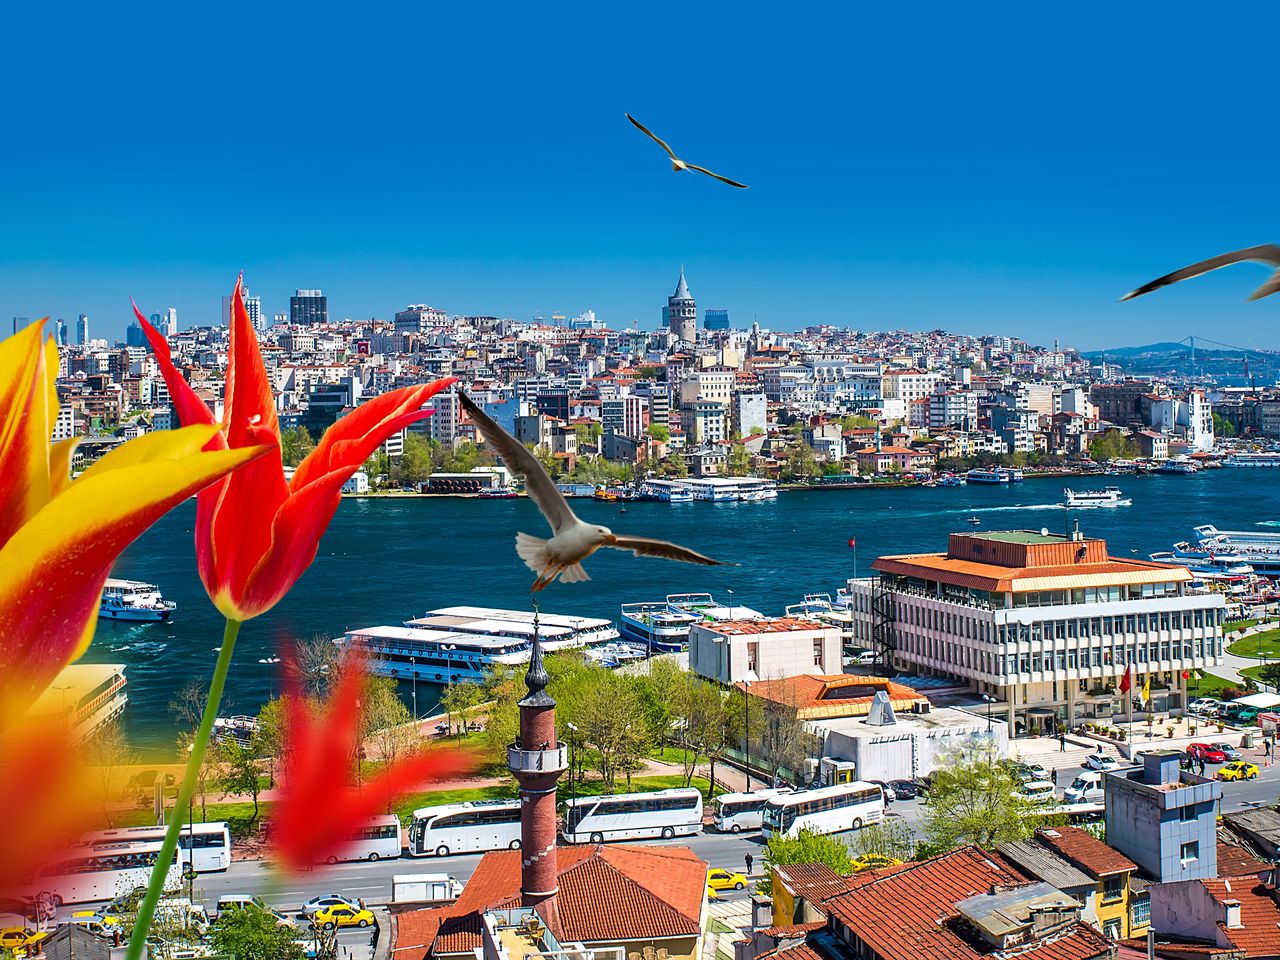  Мечети, чайки и Босфор — главные символы Стамбула | Цена 200€, отзывы, описание экскурсии